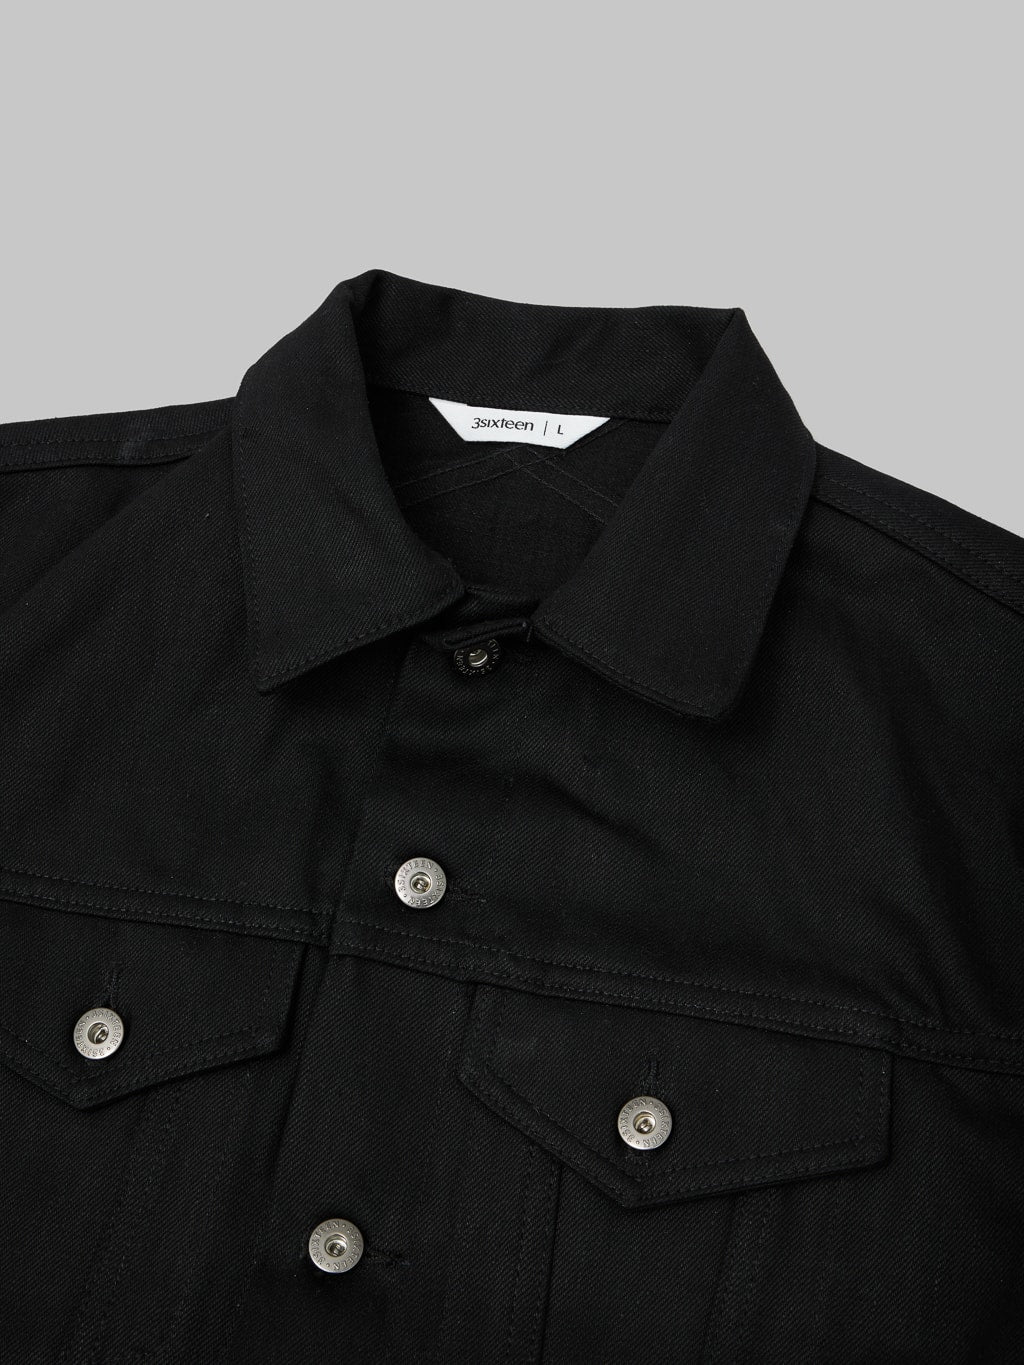 3sixteen type III denim jacket double black zig zag collar